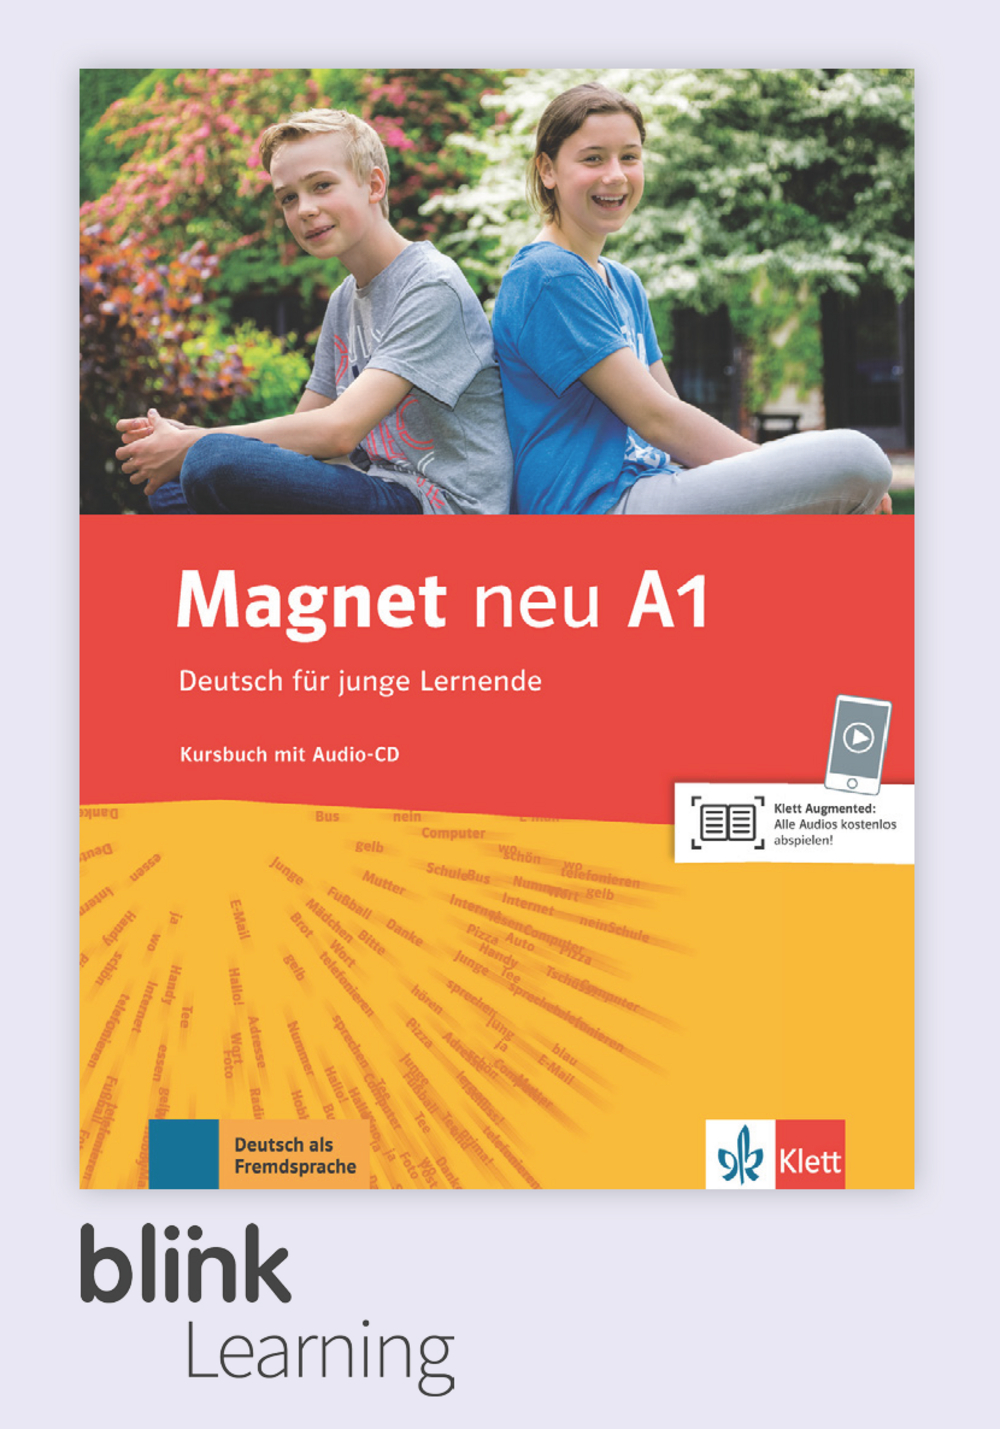 Magnet neu A1 Digital Kursbuch fur Lernende / Цифровой учебник для ученика